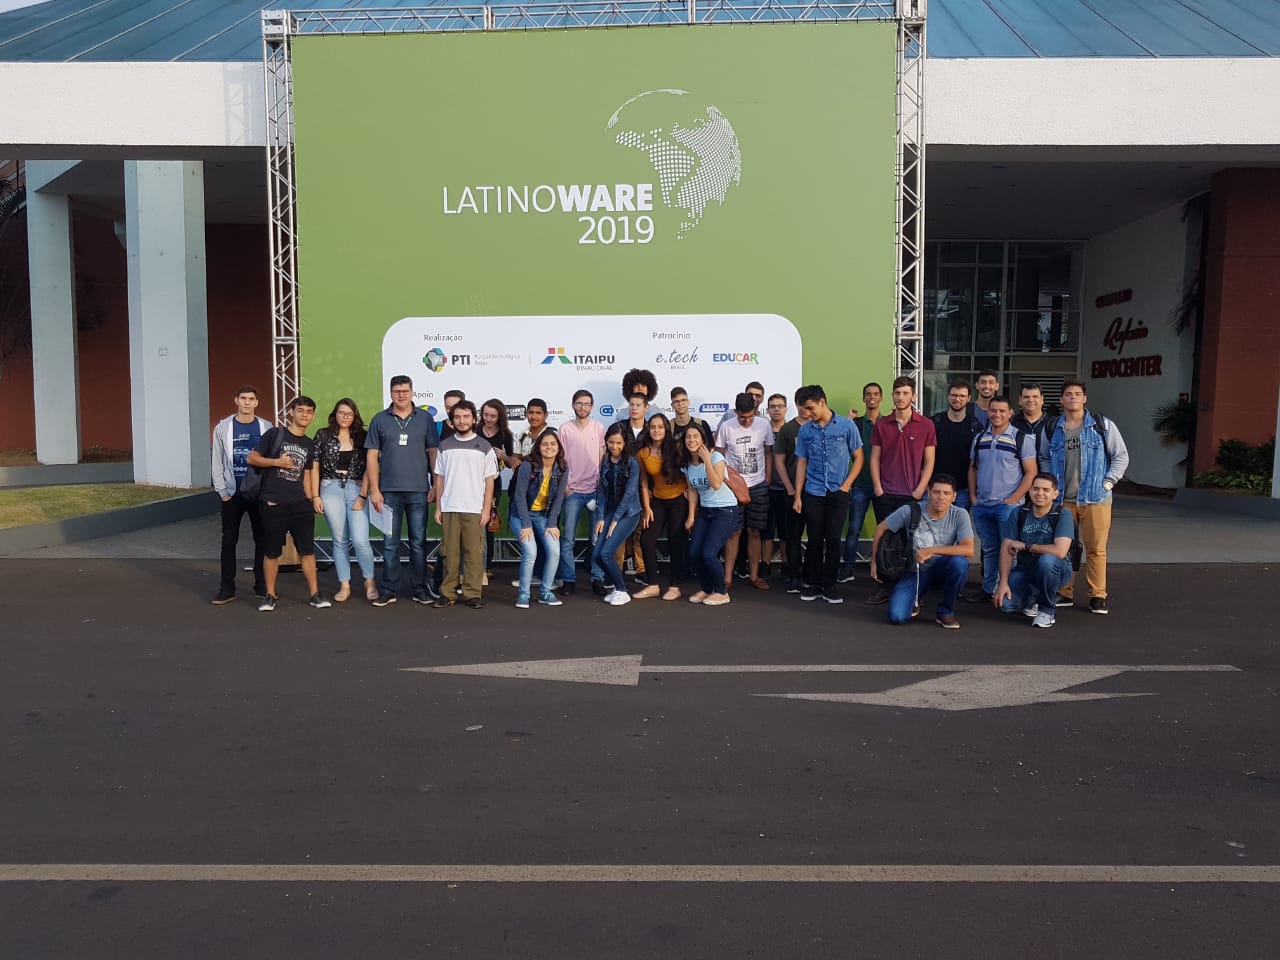 Latinoware 2019